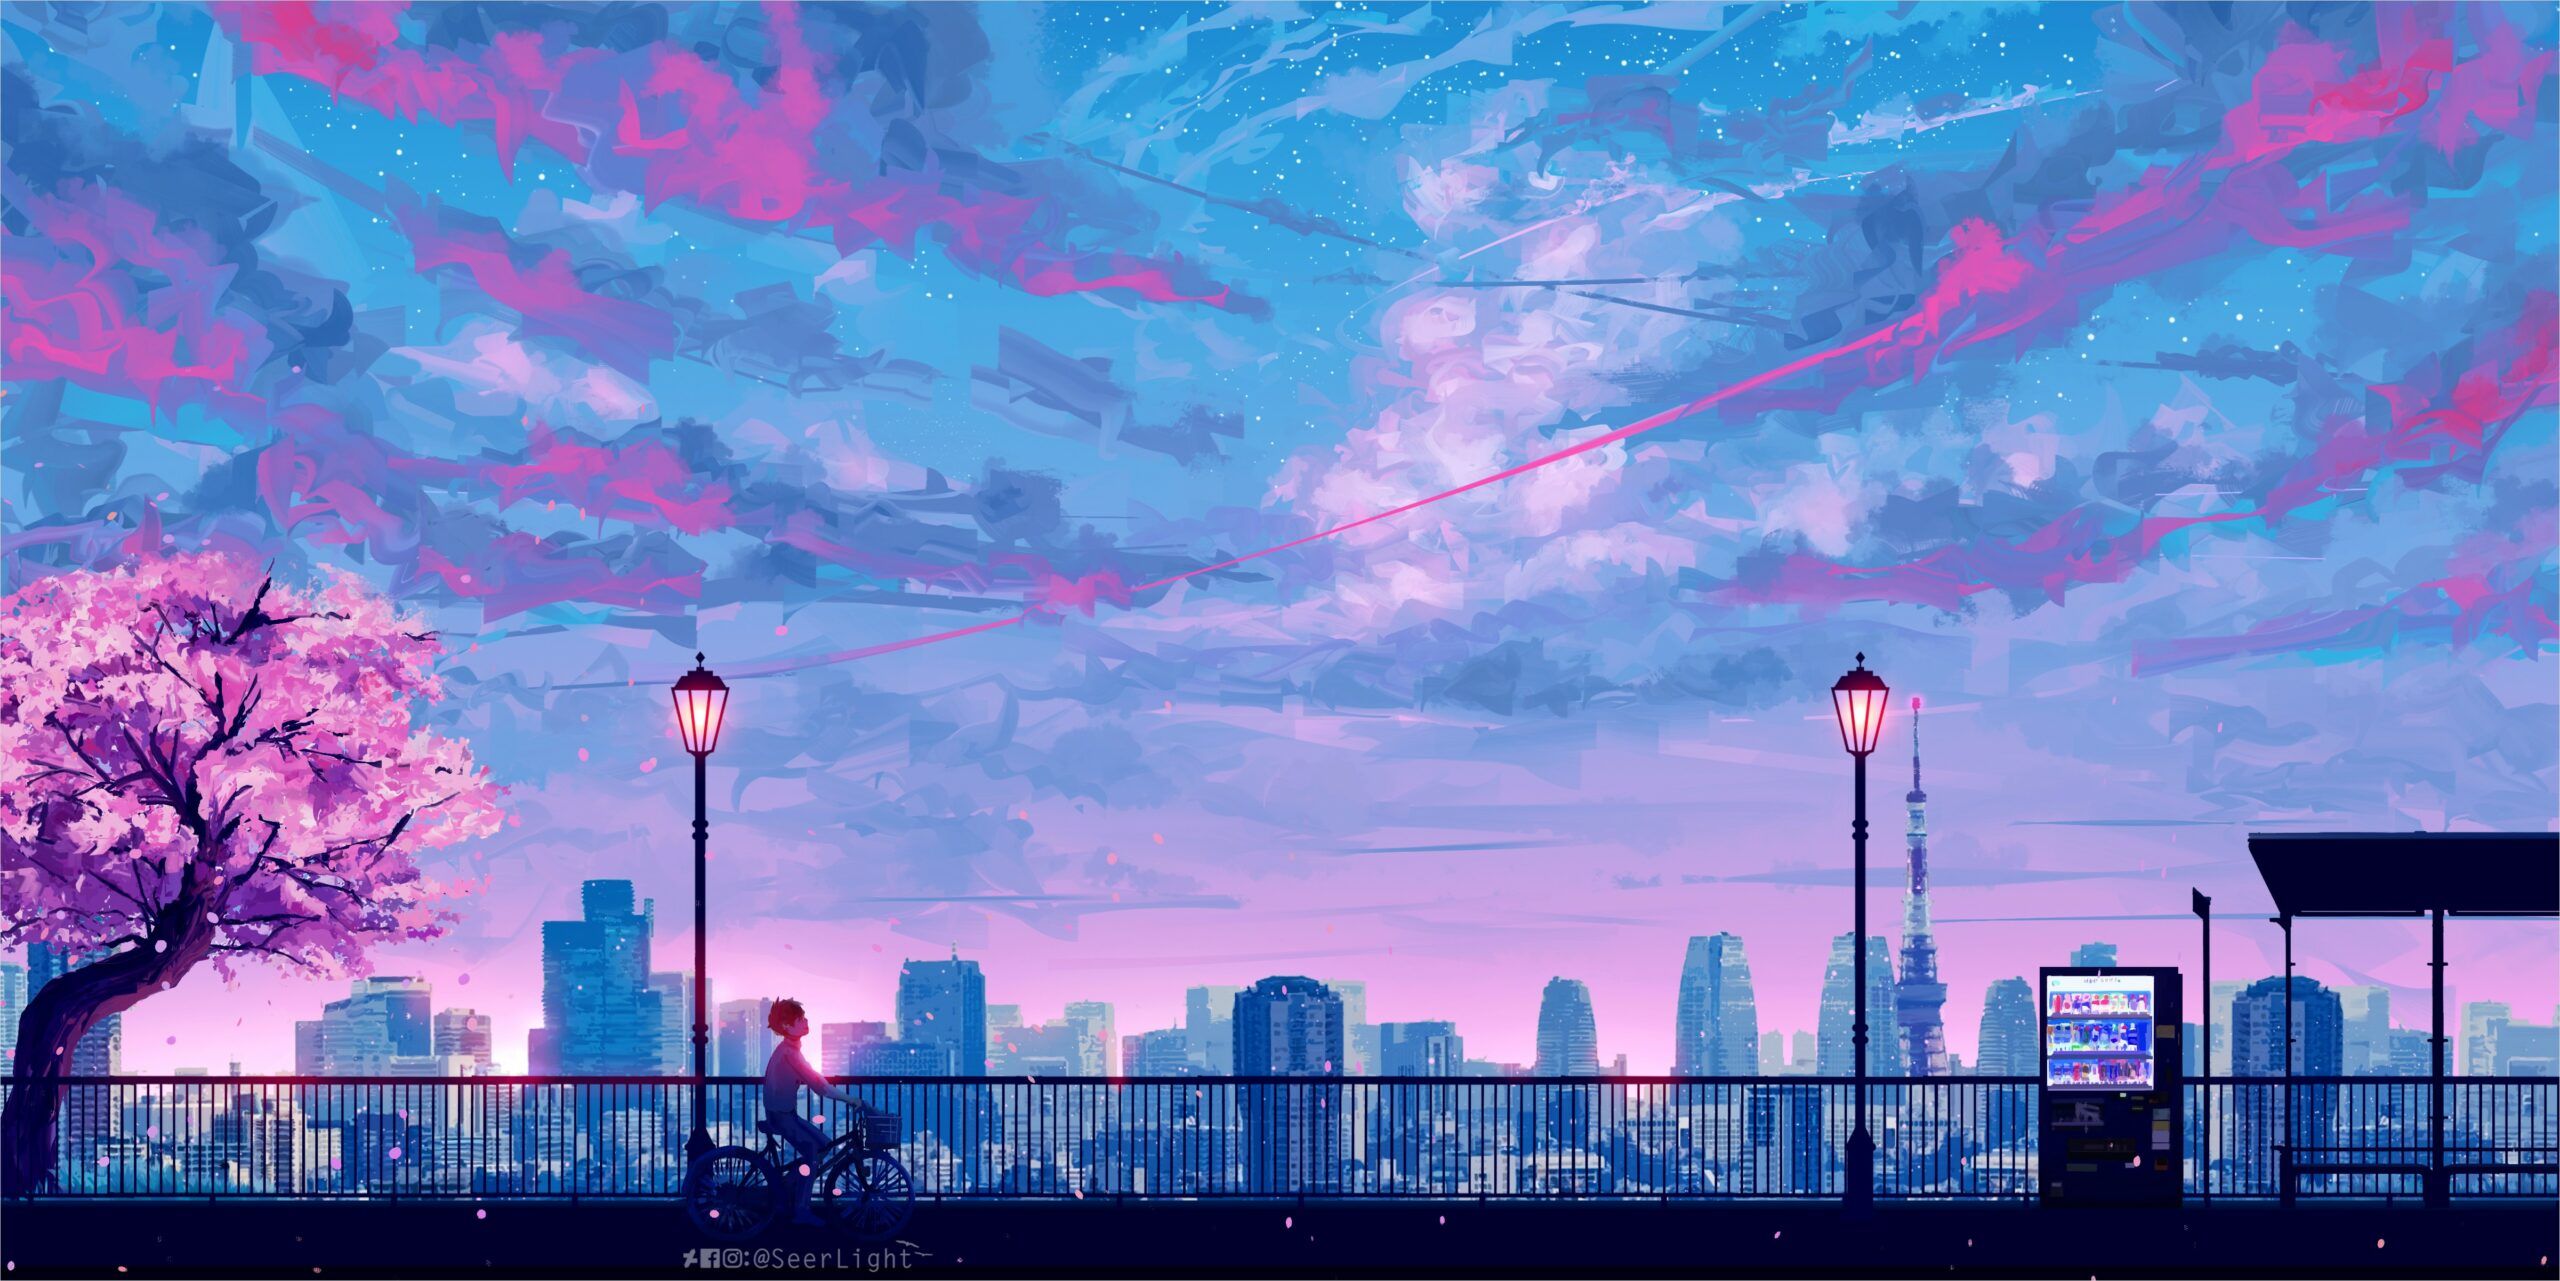 Hình nền anime phong cảnh đô thị 4k miễn phí sẽ khiến bạn say mê. Với độ phân giải 4k và màu sắc đẹp, bạn sẽ được trải nghiệm vẻ đẹp của anime trong mỗi chi tiết. Hãy đến và khám phá những bức tranh tràn đầy sắc màu này và cảm nhận sự cuồng nhiệt và điên rồ của phong cảnh đô thị.